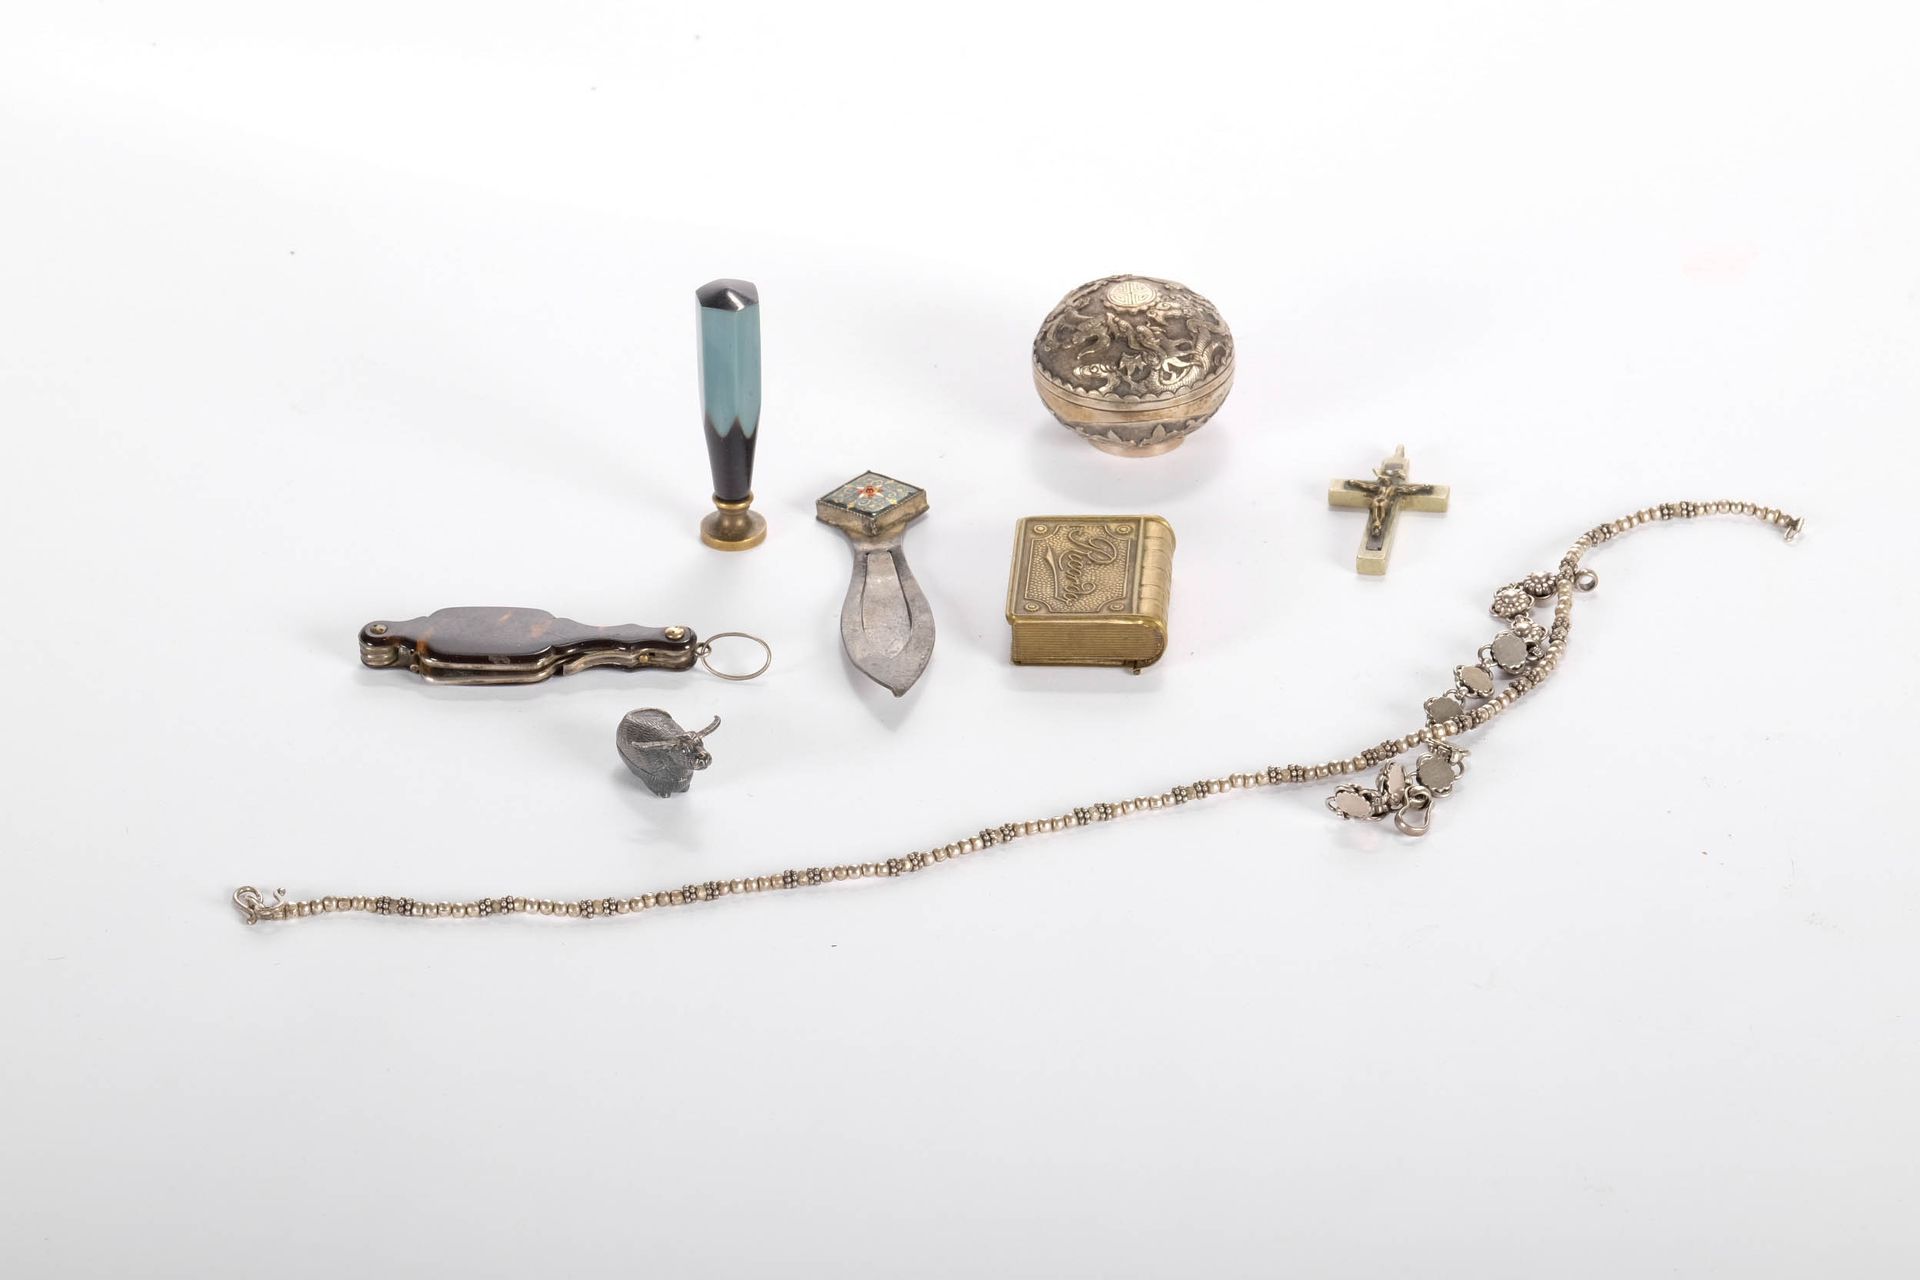 Bijouterie, objet de vitrine 展示品和珠宝；一些银制品。